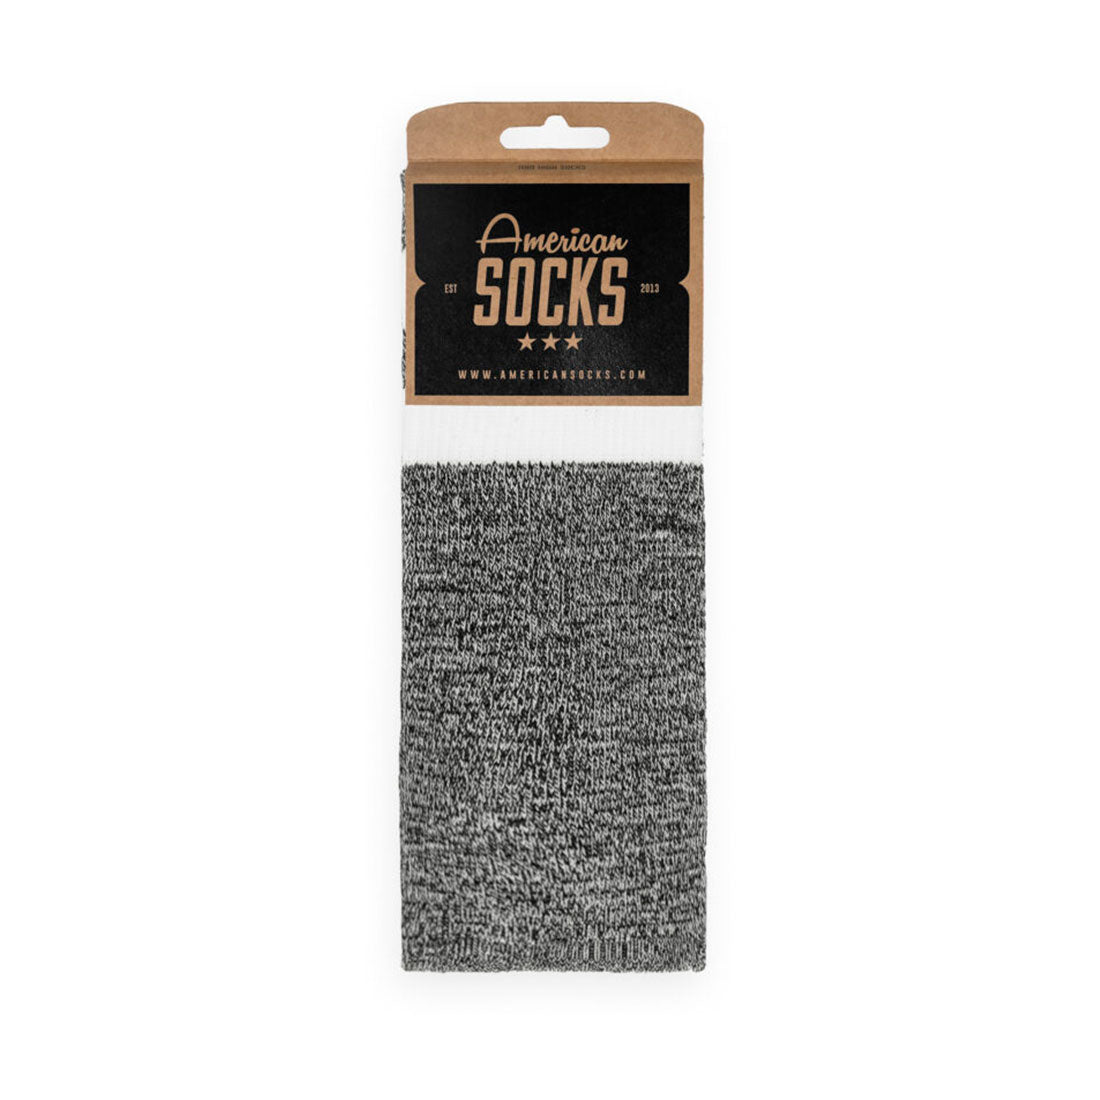 American Socks BTN - White Noise Apparel Socks